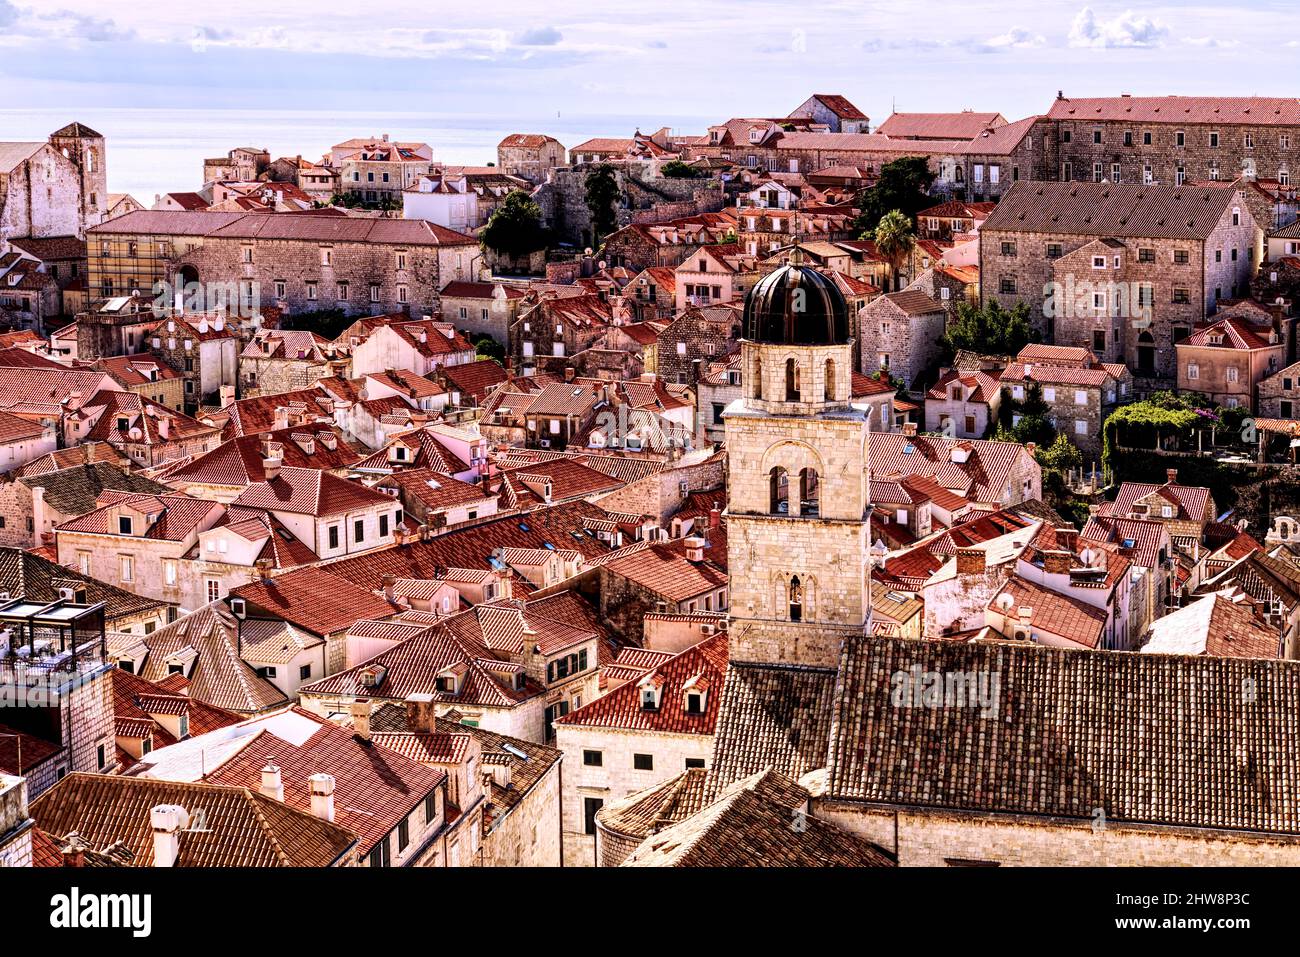 Vue aérienne depuis le mur de la ville des toits rouges en terre cuite de la vieille ville de Dubrovnik, Croatie Banque D'Images